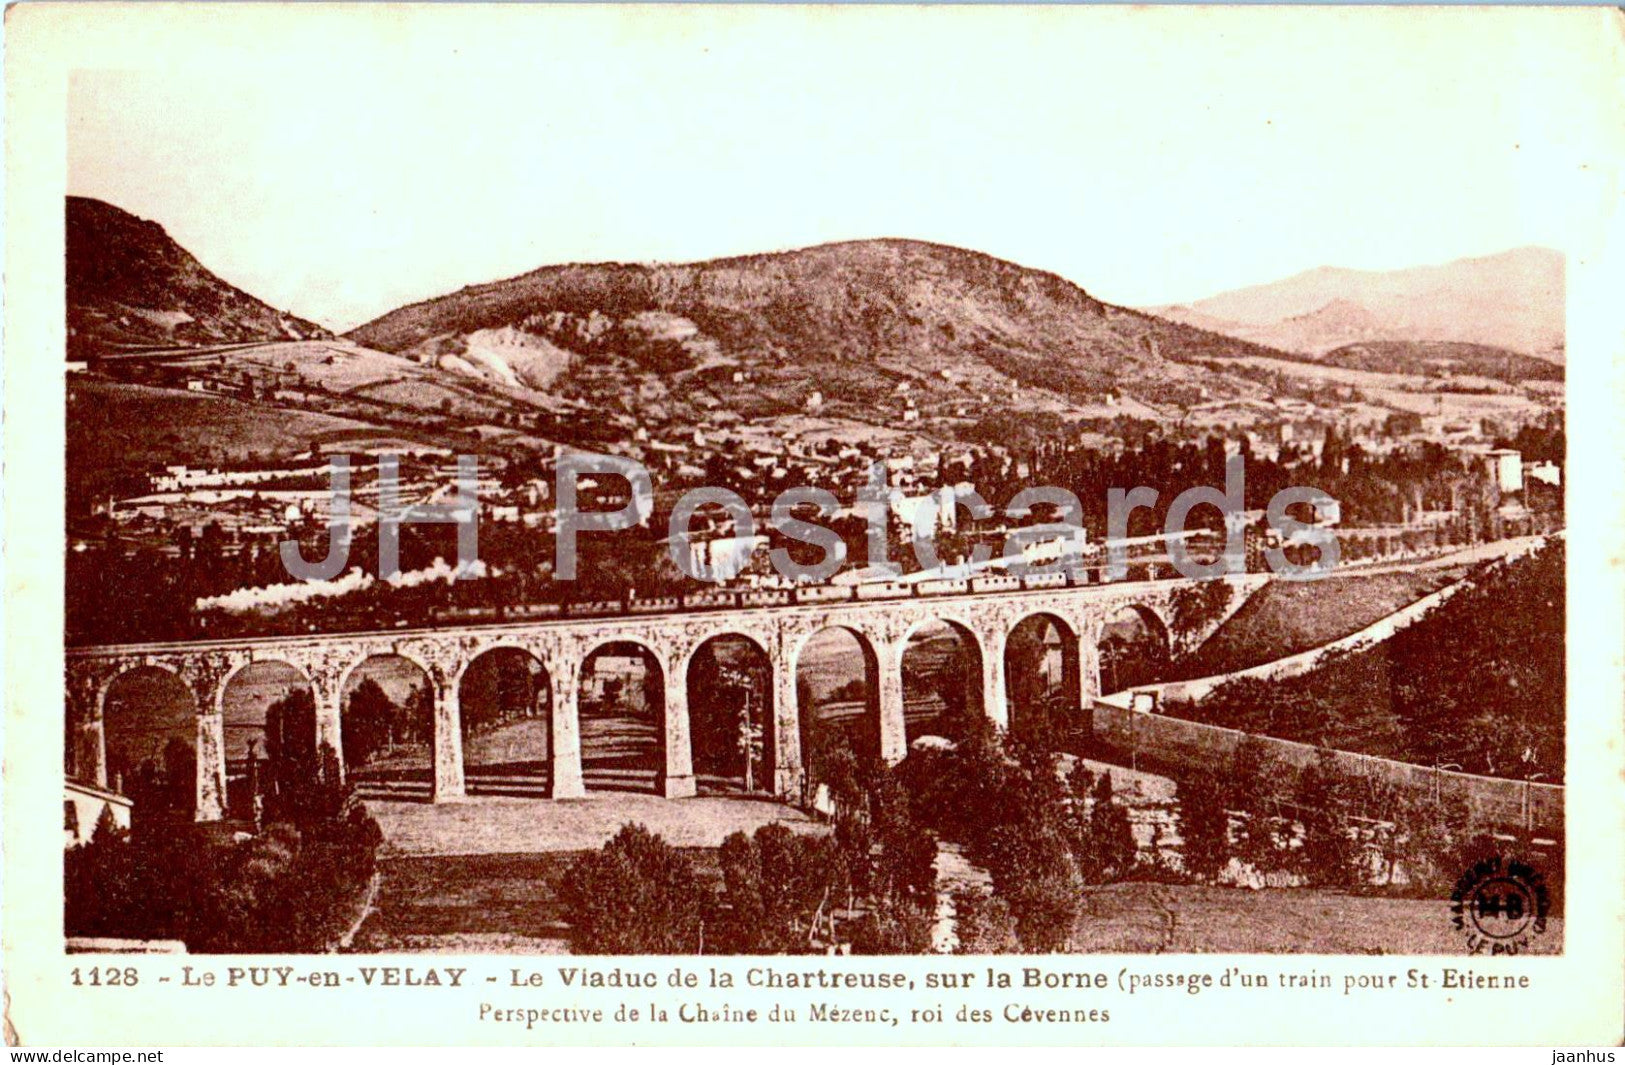 Le Puy en Velay - Le Viaduc de la Chartreuse sur la Borne - viaduct - railway - 1128 - old postcard - France - unused - JH Postcards